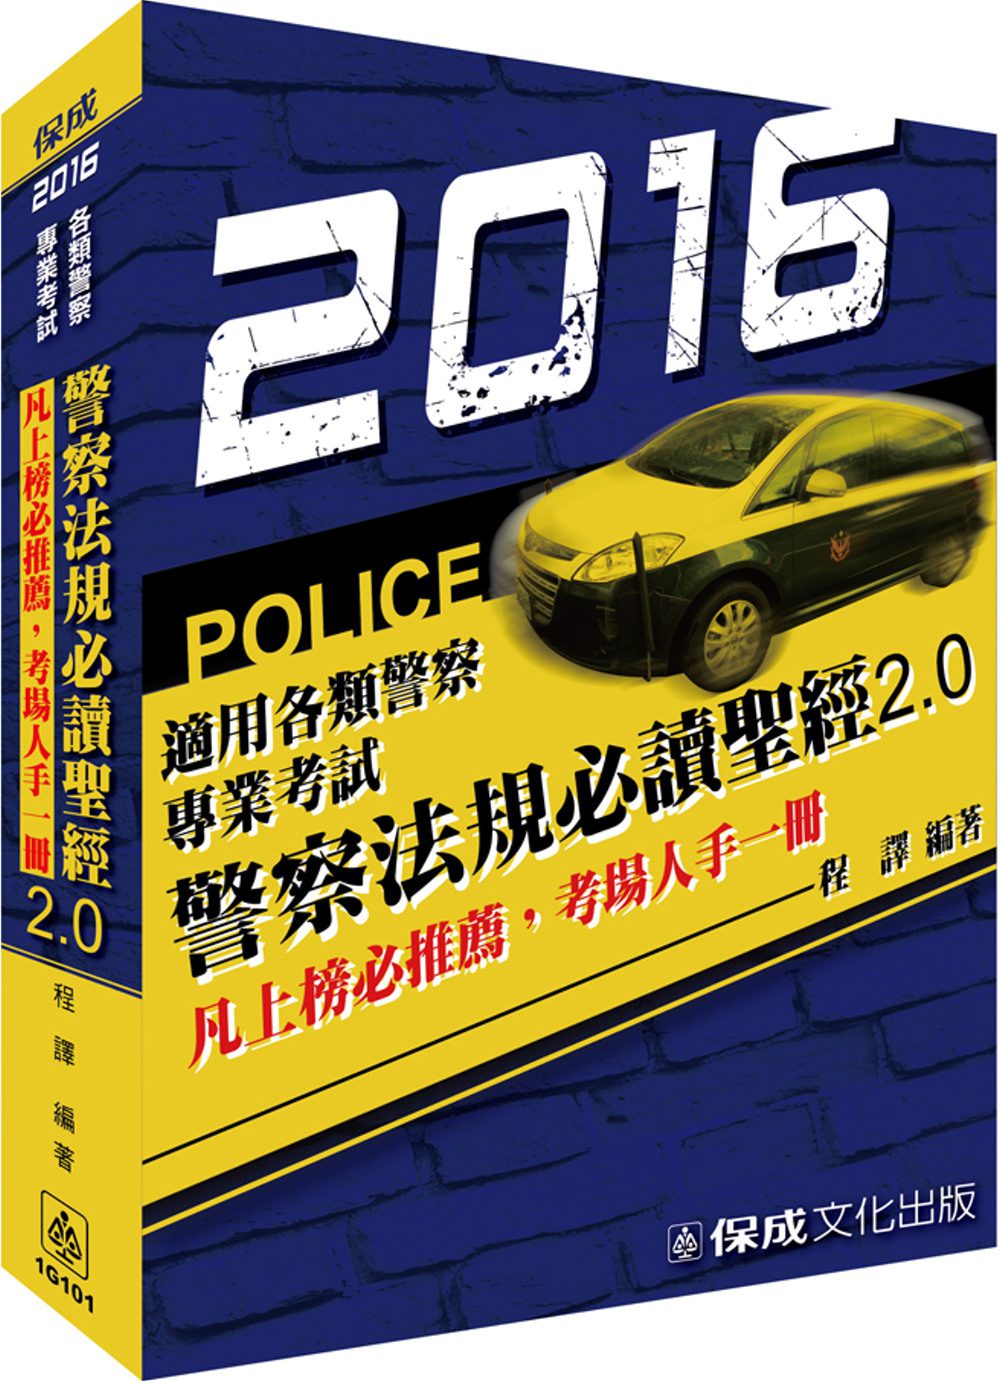 警察法規必讀聖經2.0-2016警察特考<保成